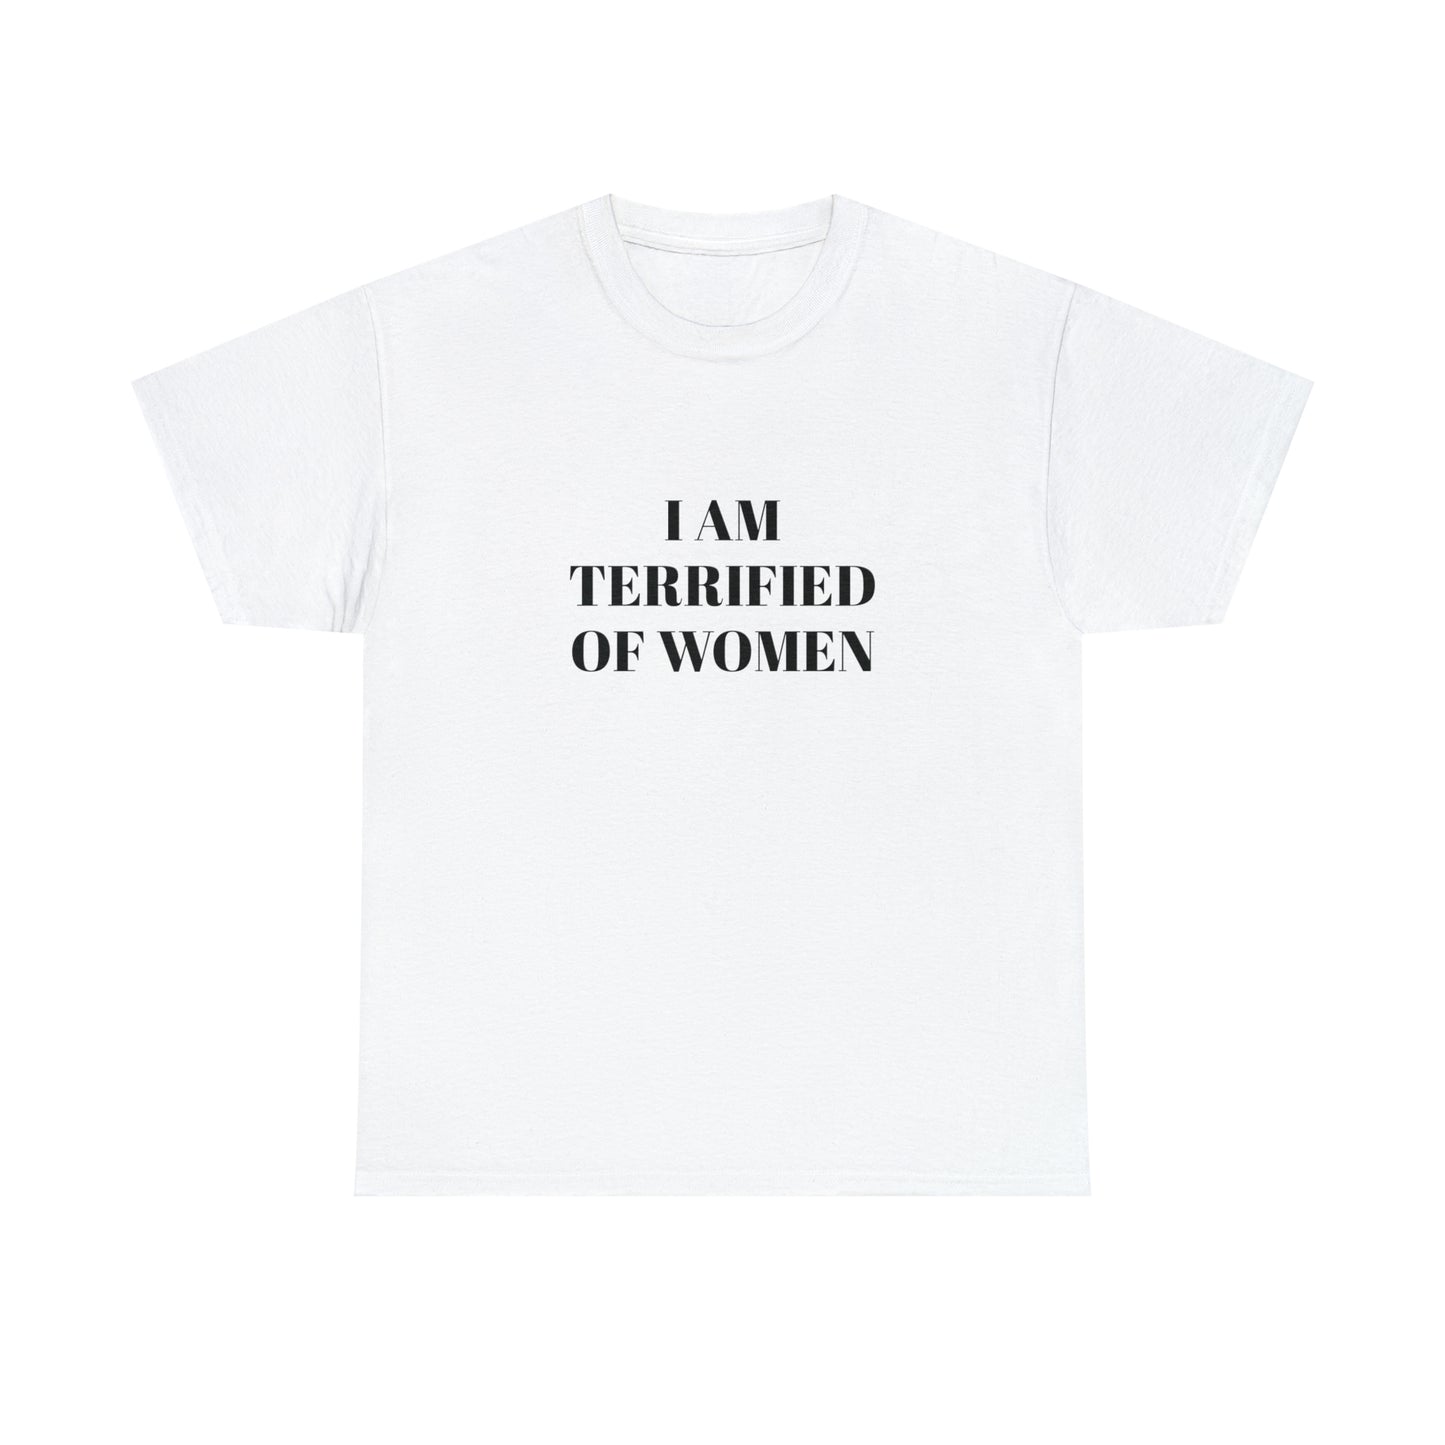 I AM TERRIFIED OF WOMEN T-SHIRT